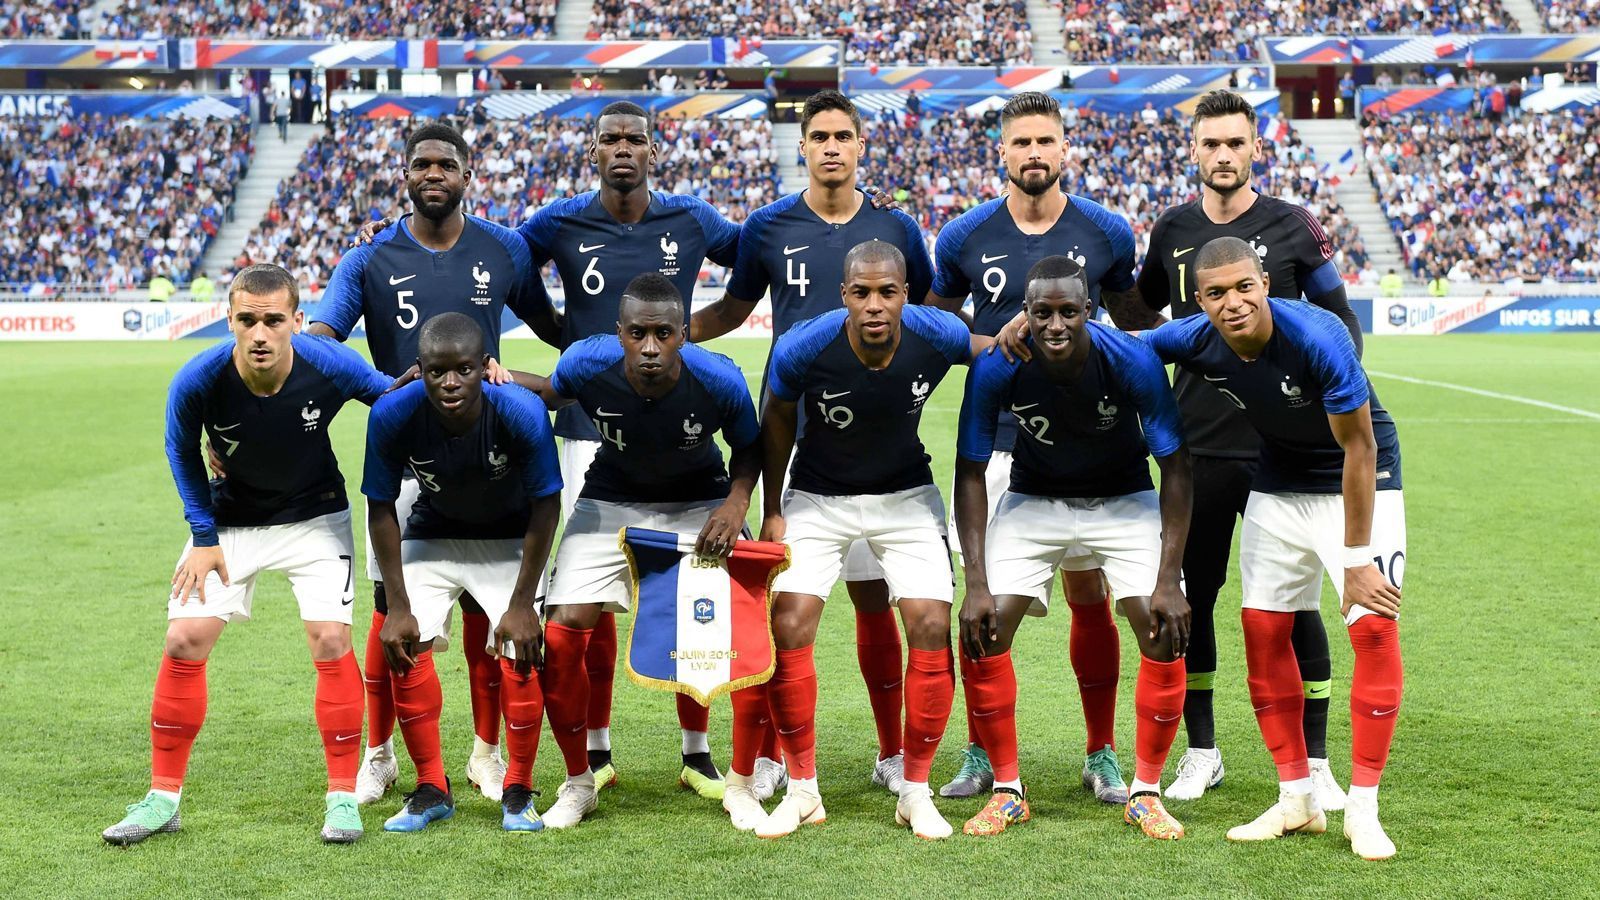 
                <strong>Frankreich (Gruppe C)</strong><br>
                Spitzname: "Les Bleus" (die Blauen). Bisweilen auch "Equipe tricolore" (die dreifarbige Mannschaft), nach der Nationalflagge.
              